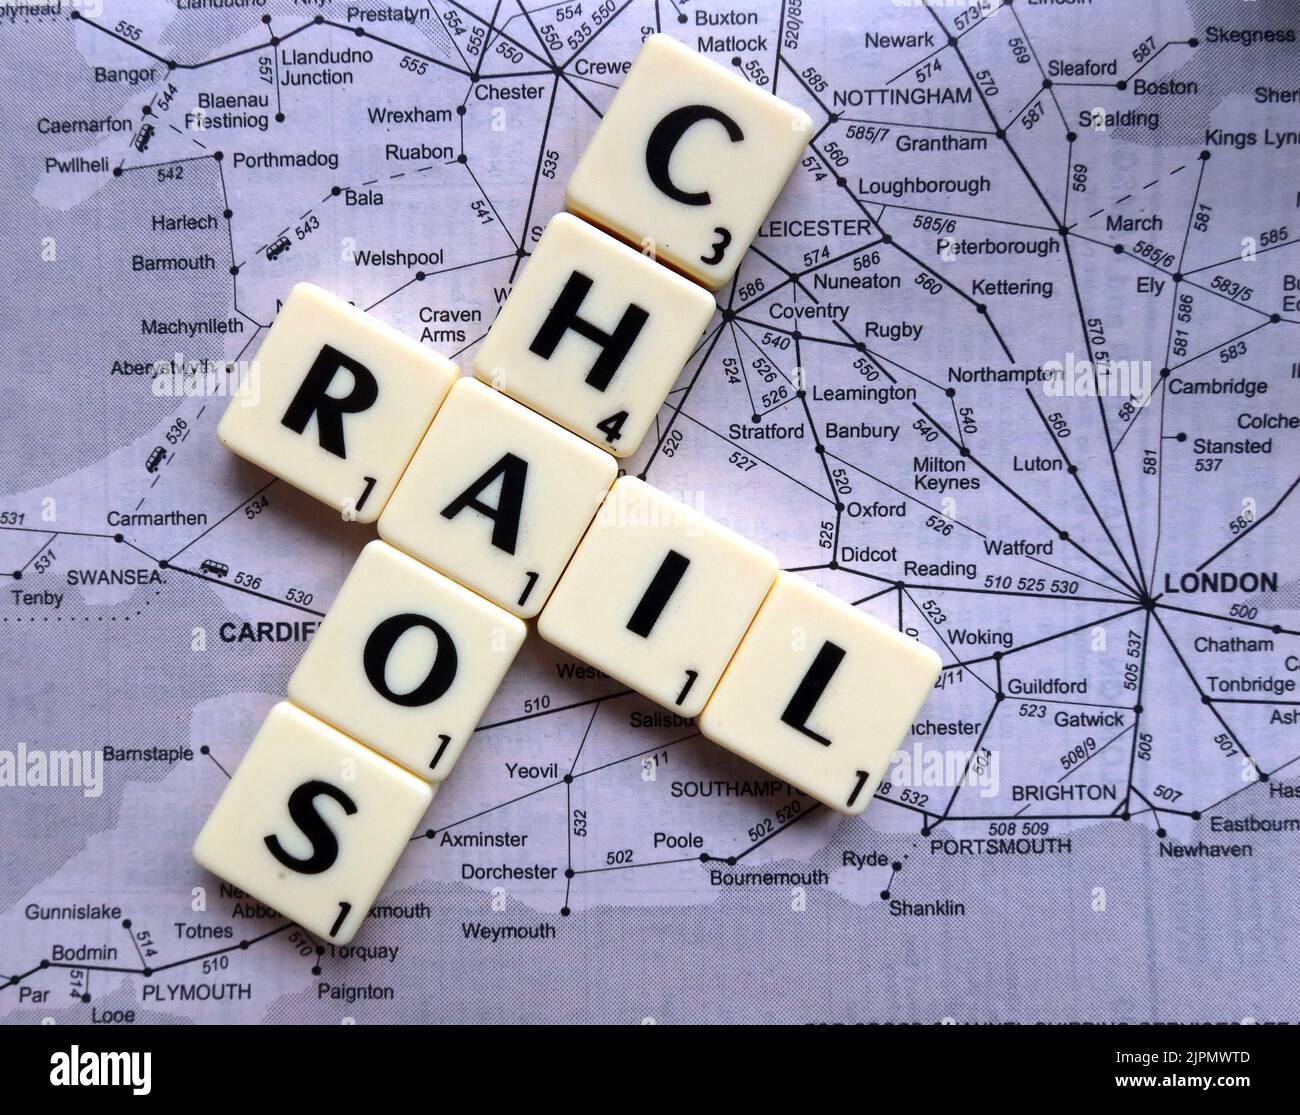 Le chaos ferroviaire causé par des retards, des annulations, des grèves et des actions industrielles, à travers le réseau britannique de transport ferroviaire - RMT, ASLEF en lettres Scrabble Banque D'Images